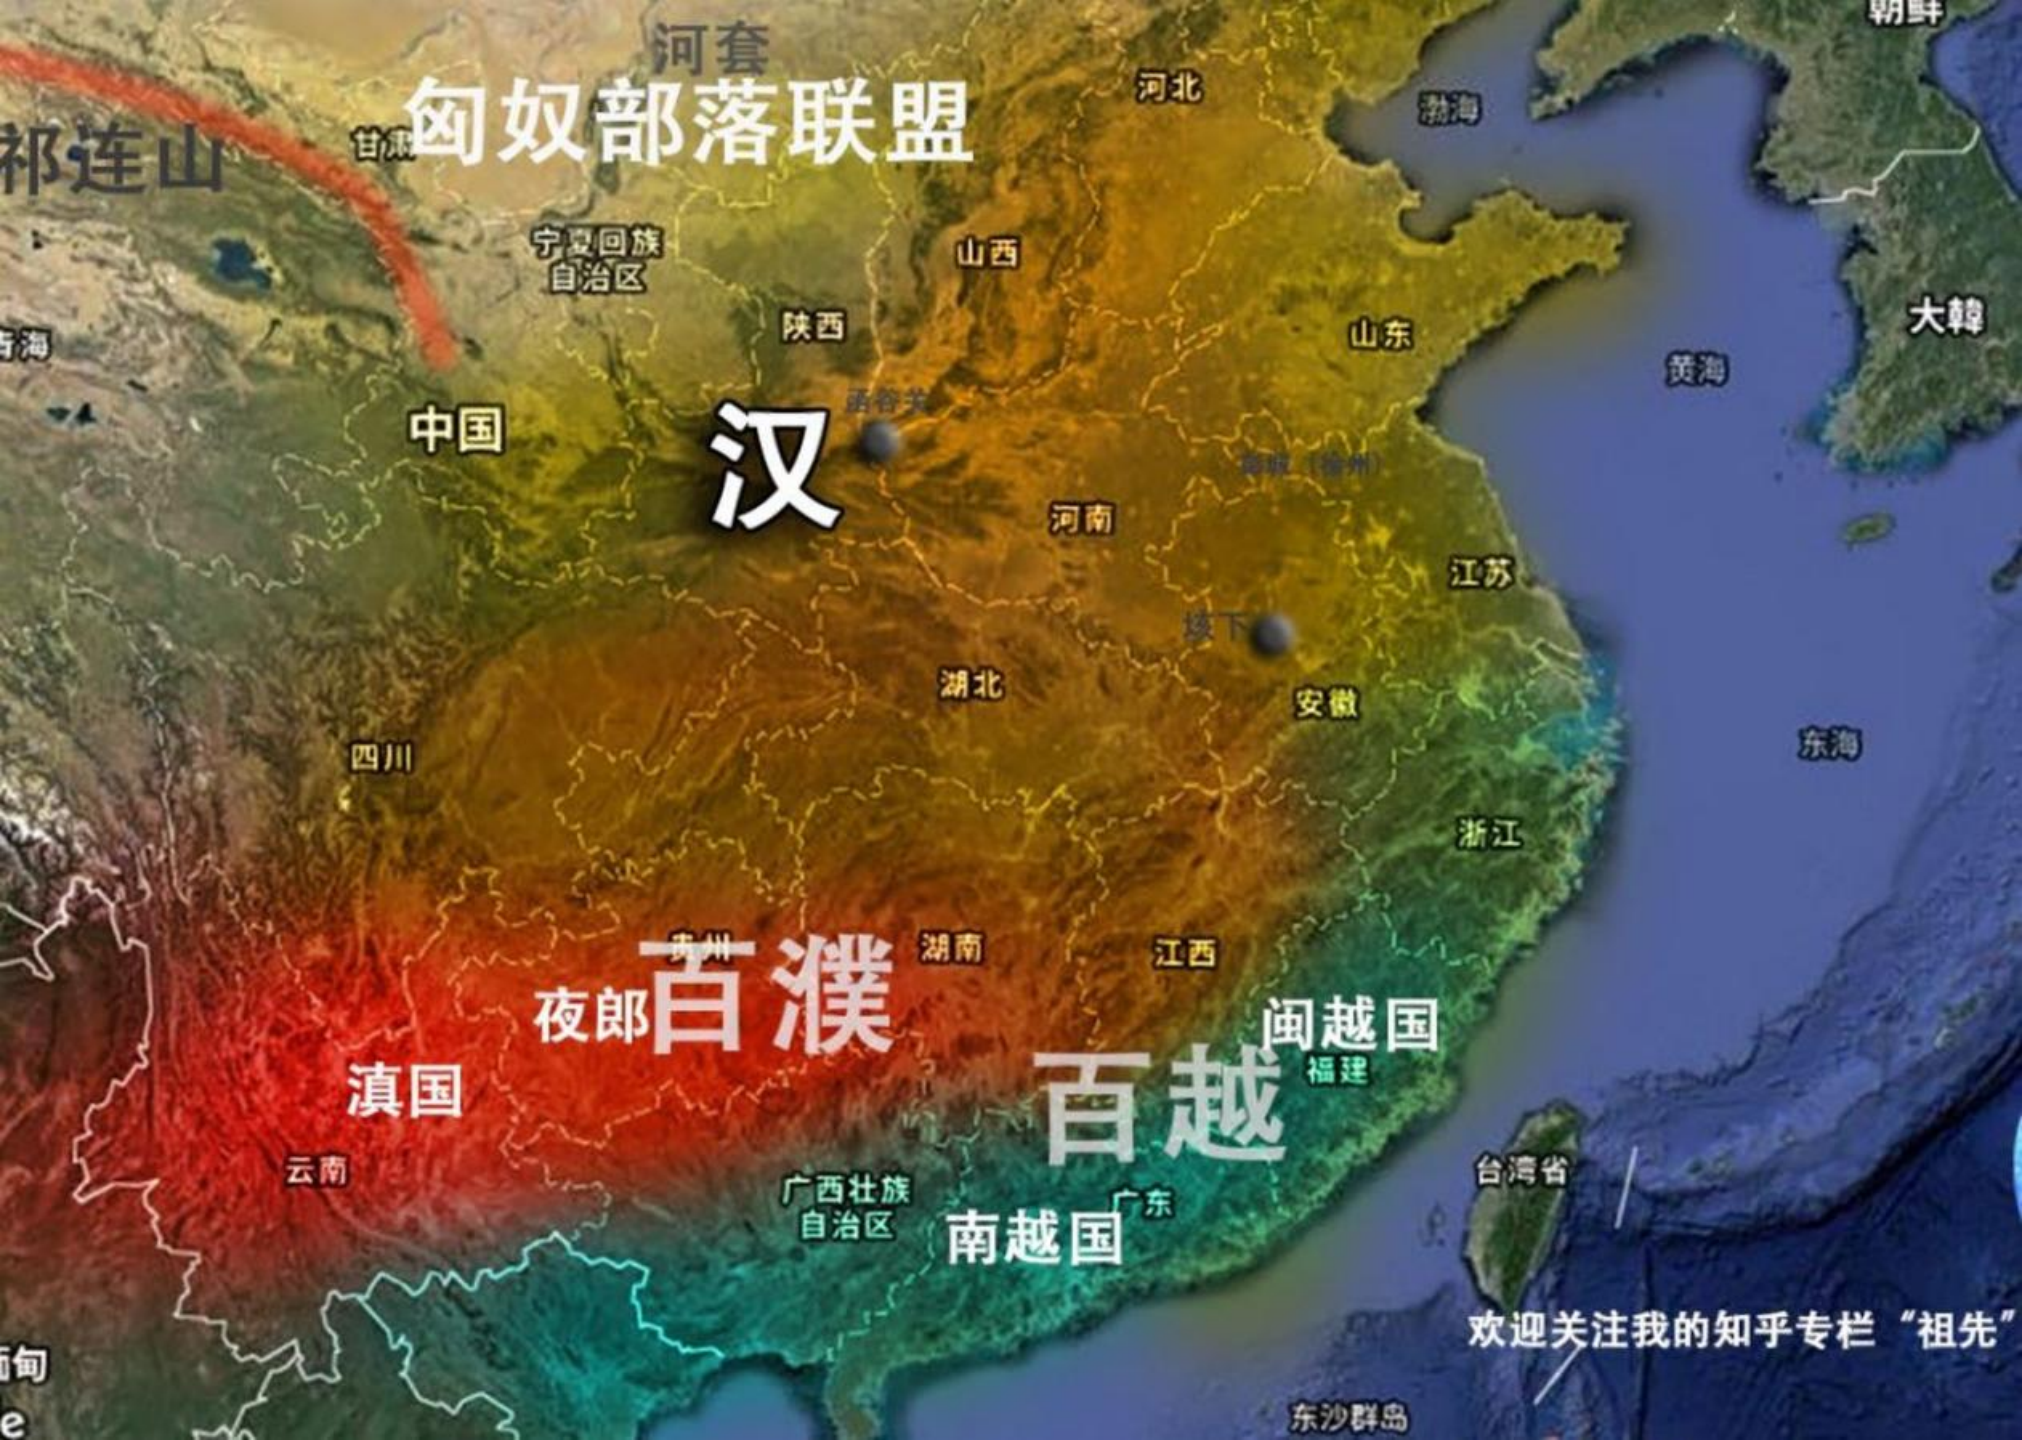 图 1:当时的汉朝周边地区示意图